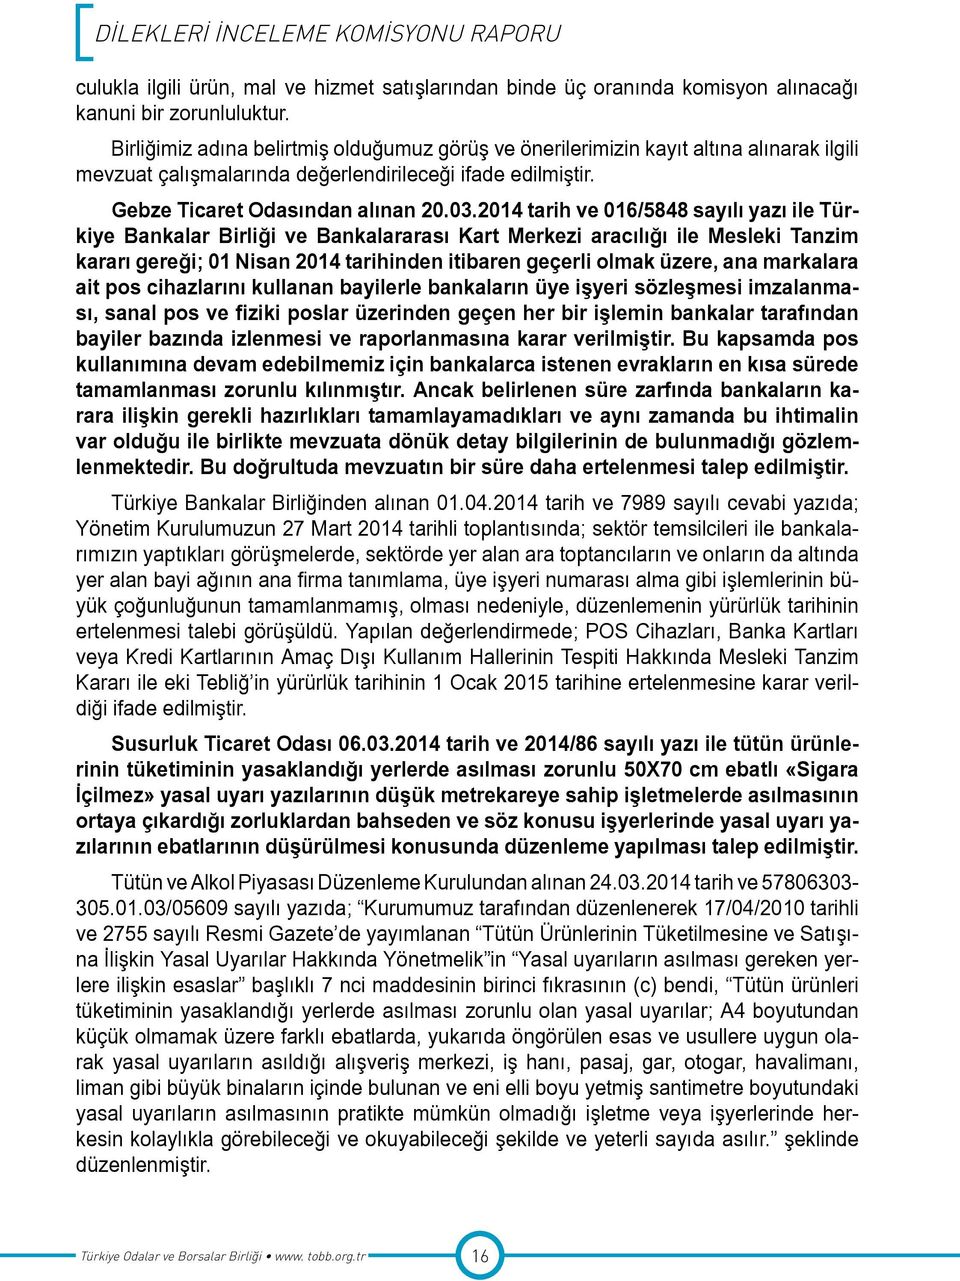 2014 tarih ve 016/5848 sayılı yazı ile Türkiye Bankalar Birliği ve Bankalararası Kart Merkezi aracılığı ile Mesleki Tanzim kararı gereği; 01 Nisan 2014 tarihinden itibaren geçerli olmak üzere, ana